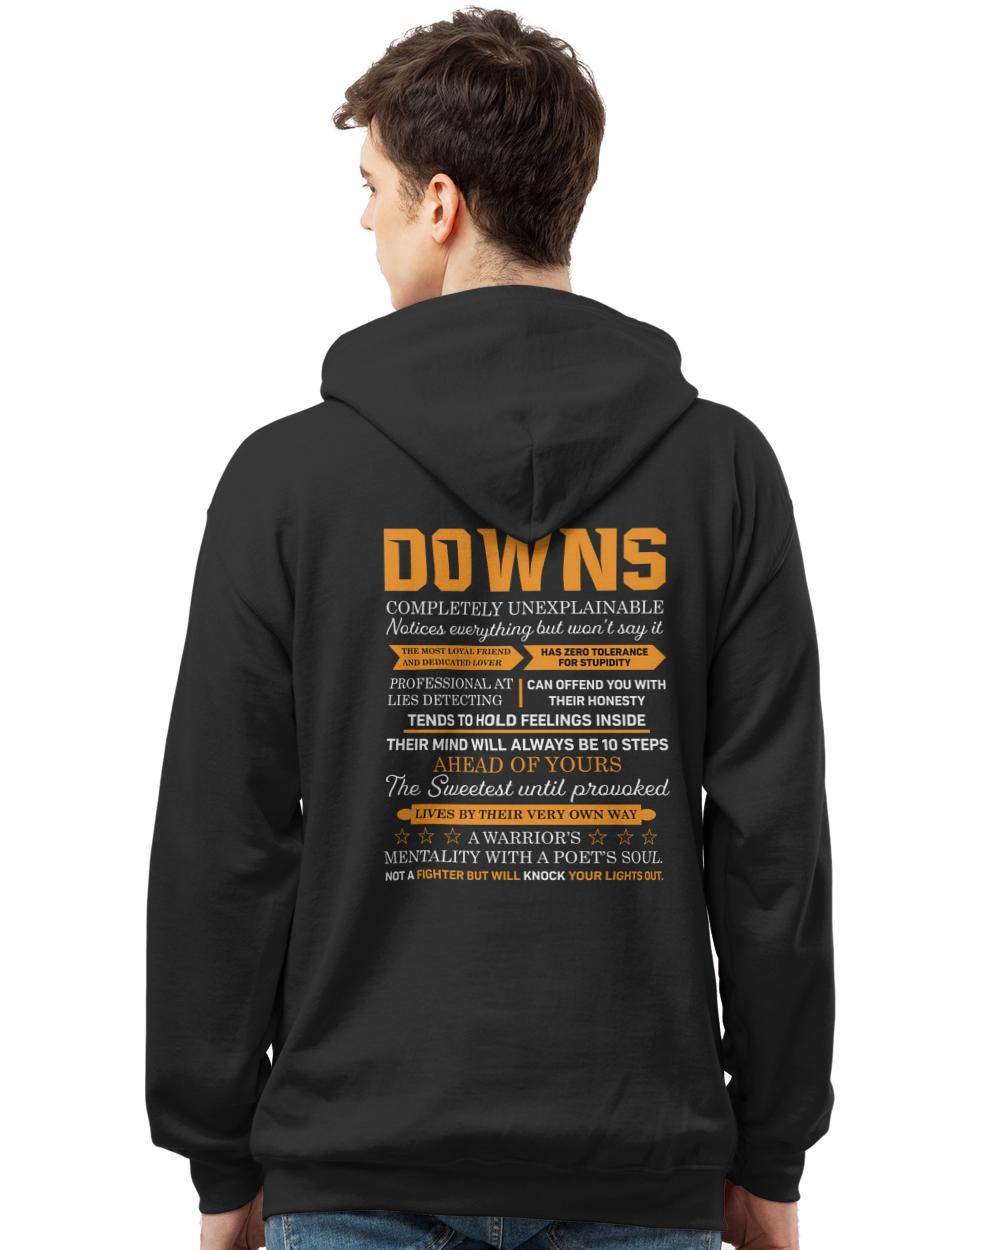 DOWNS-H3-N1